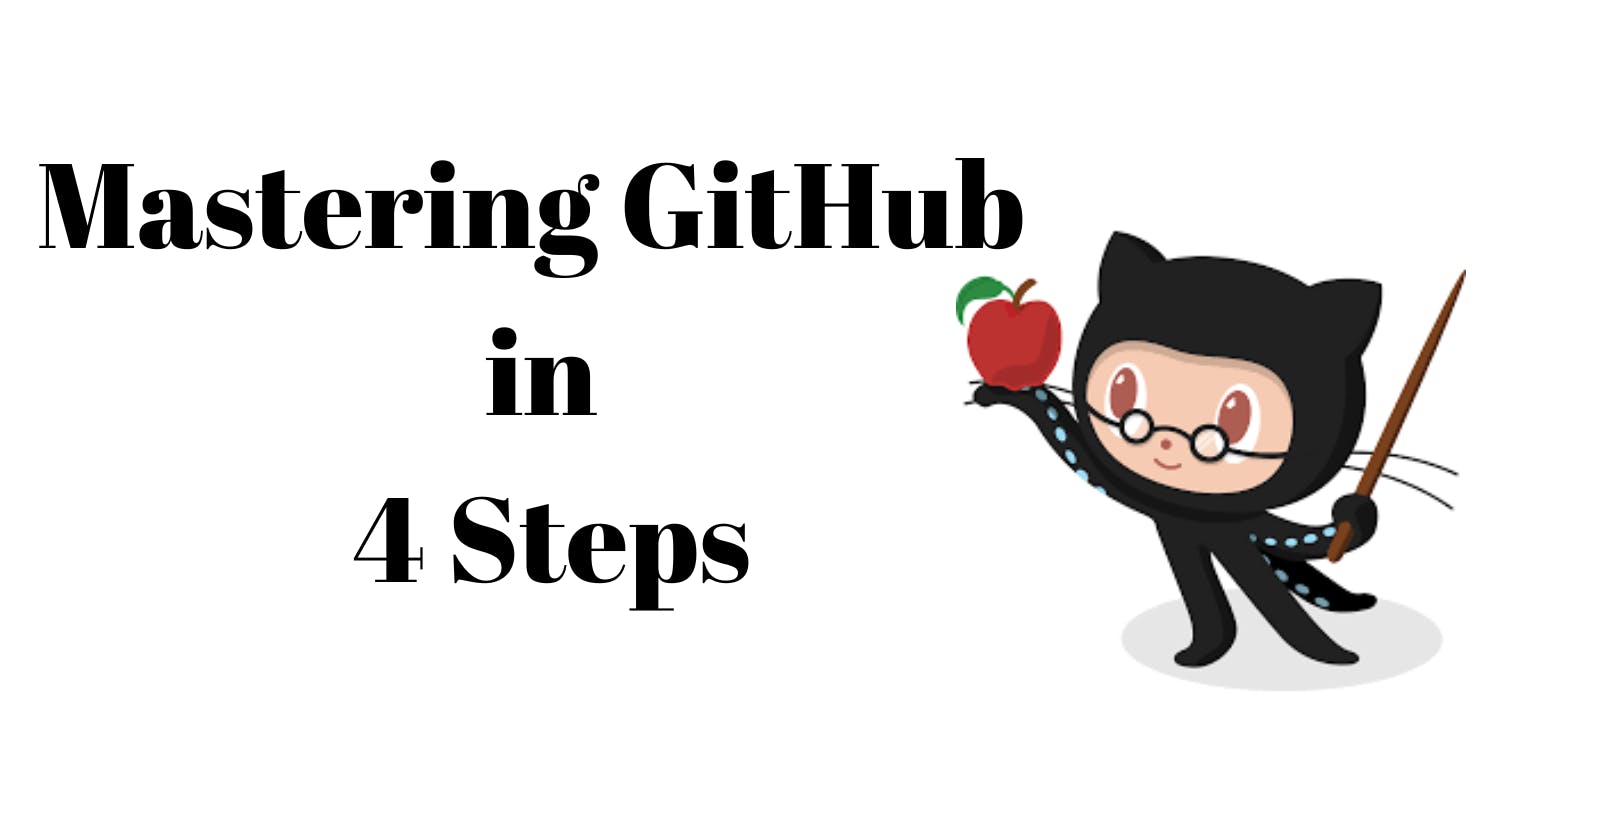 Mastering GitHub in 4 Steps